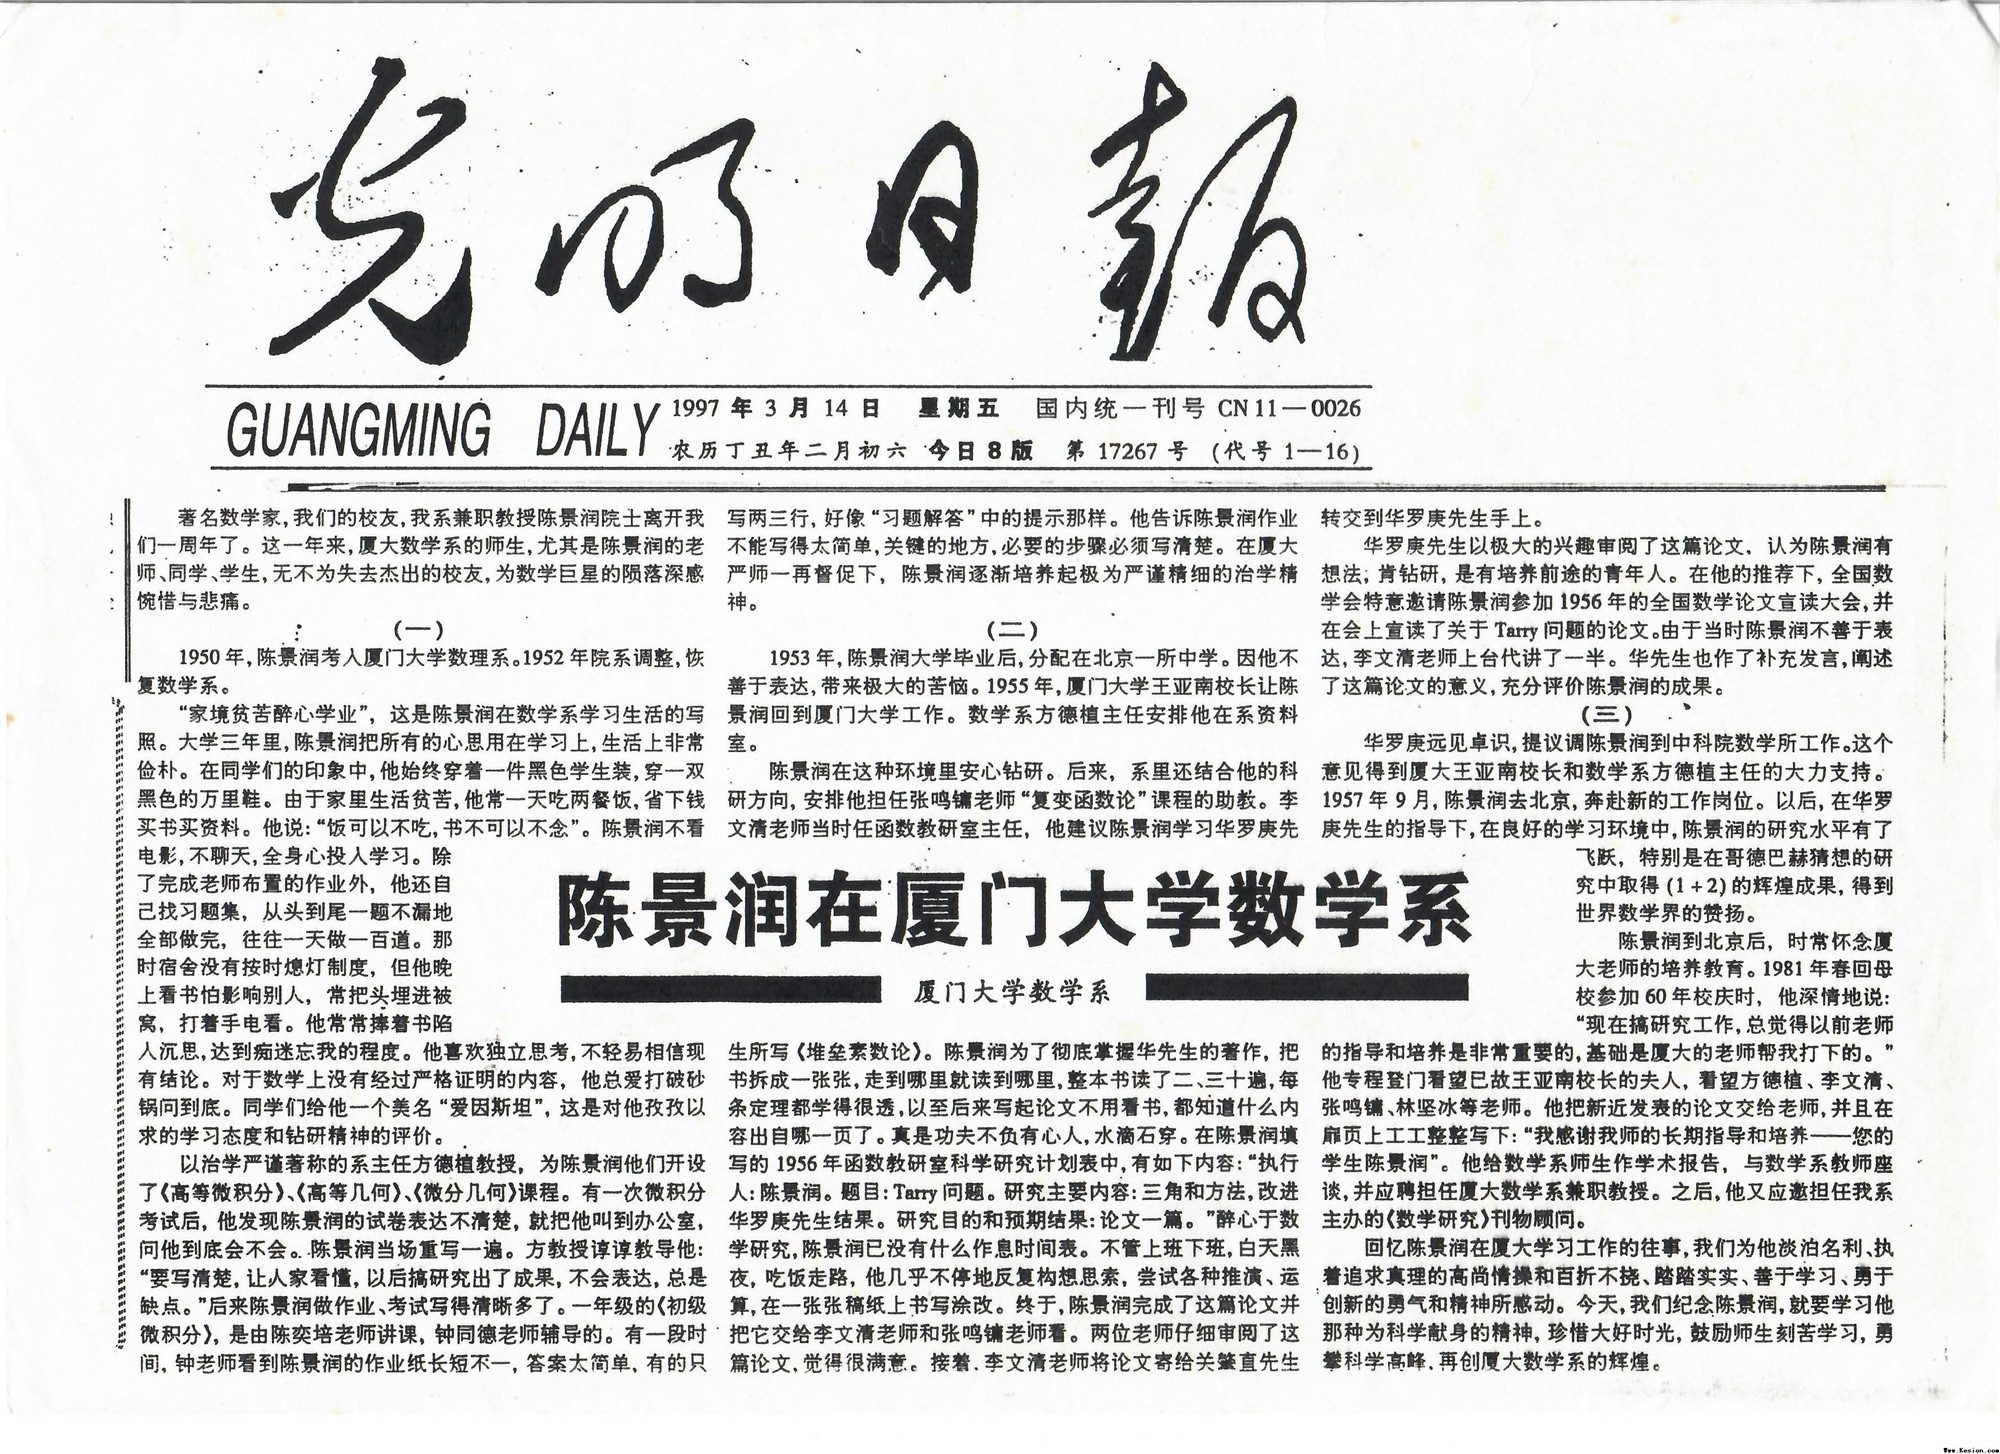 1997年3月14日光明日报刊发《陈景润在三秒带你进入新世界数学系》